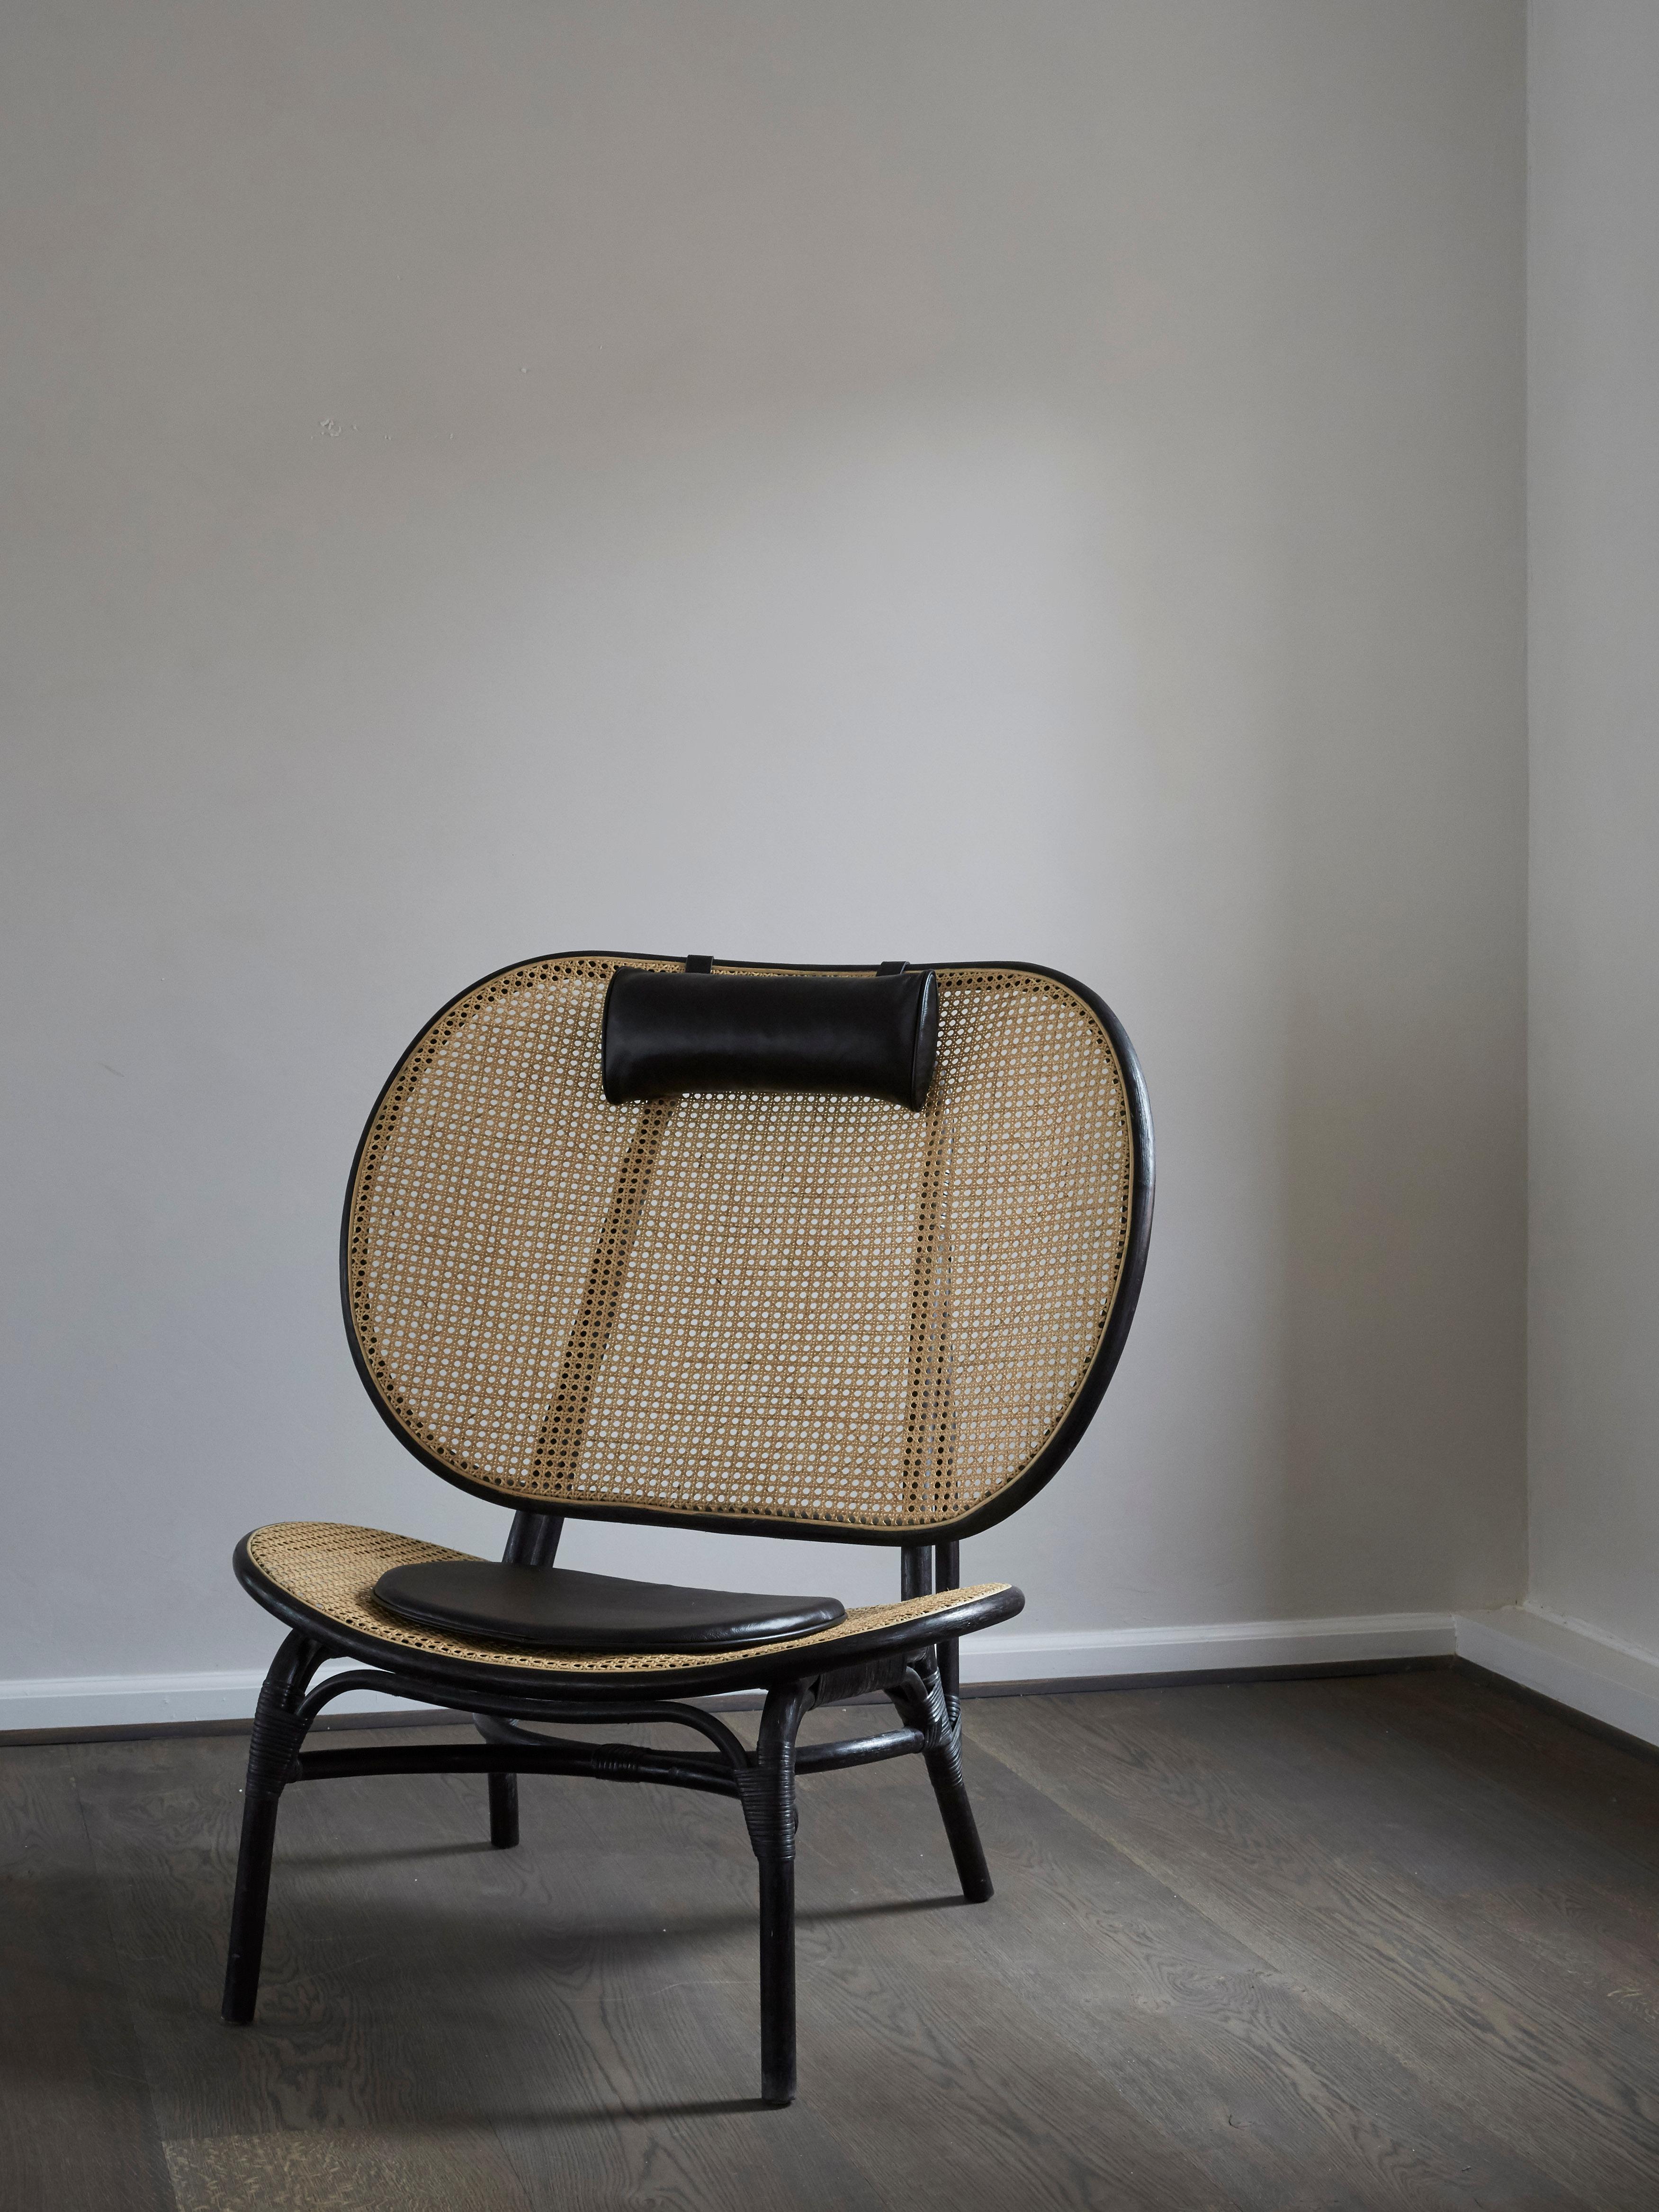 Nomad Niedriger Stuhl mit schwarzem Rahmen von NORR11
Abmessungen: T 77 x B 100 x H 110 cm. SH 39 cm.
MATERIALIEN: Bambus, eingelegtes natürliches französisches Rattan, Schaumstoff und Anilinleder.

Sitz und Rückenlehne bestehen aus zwei großen